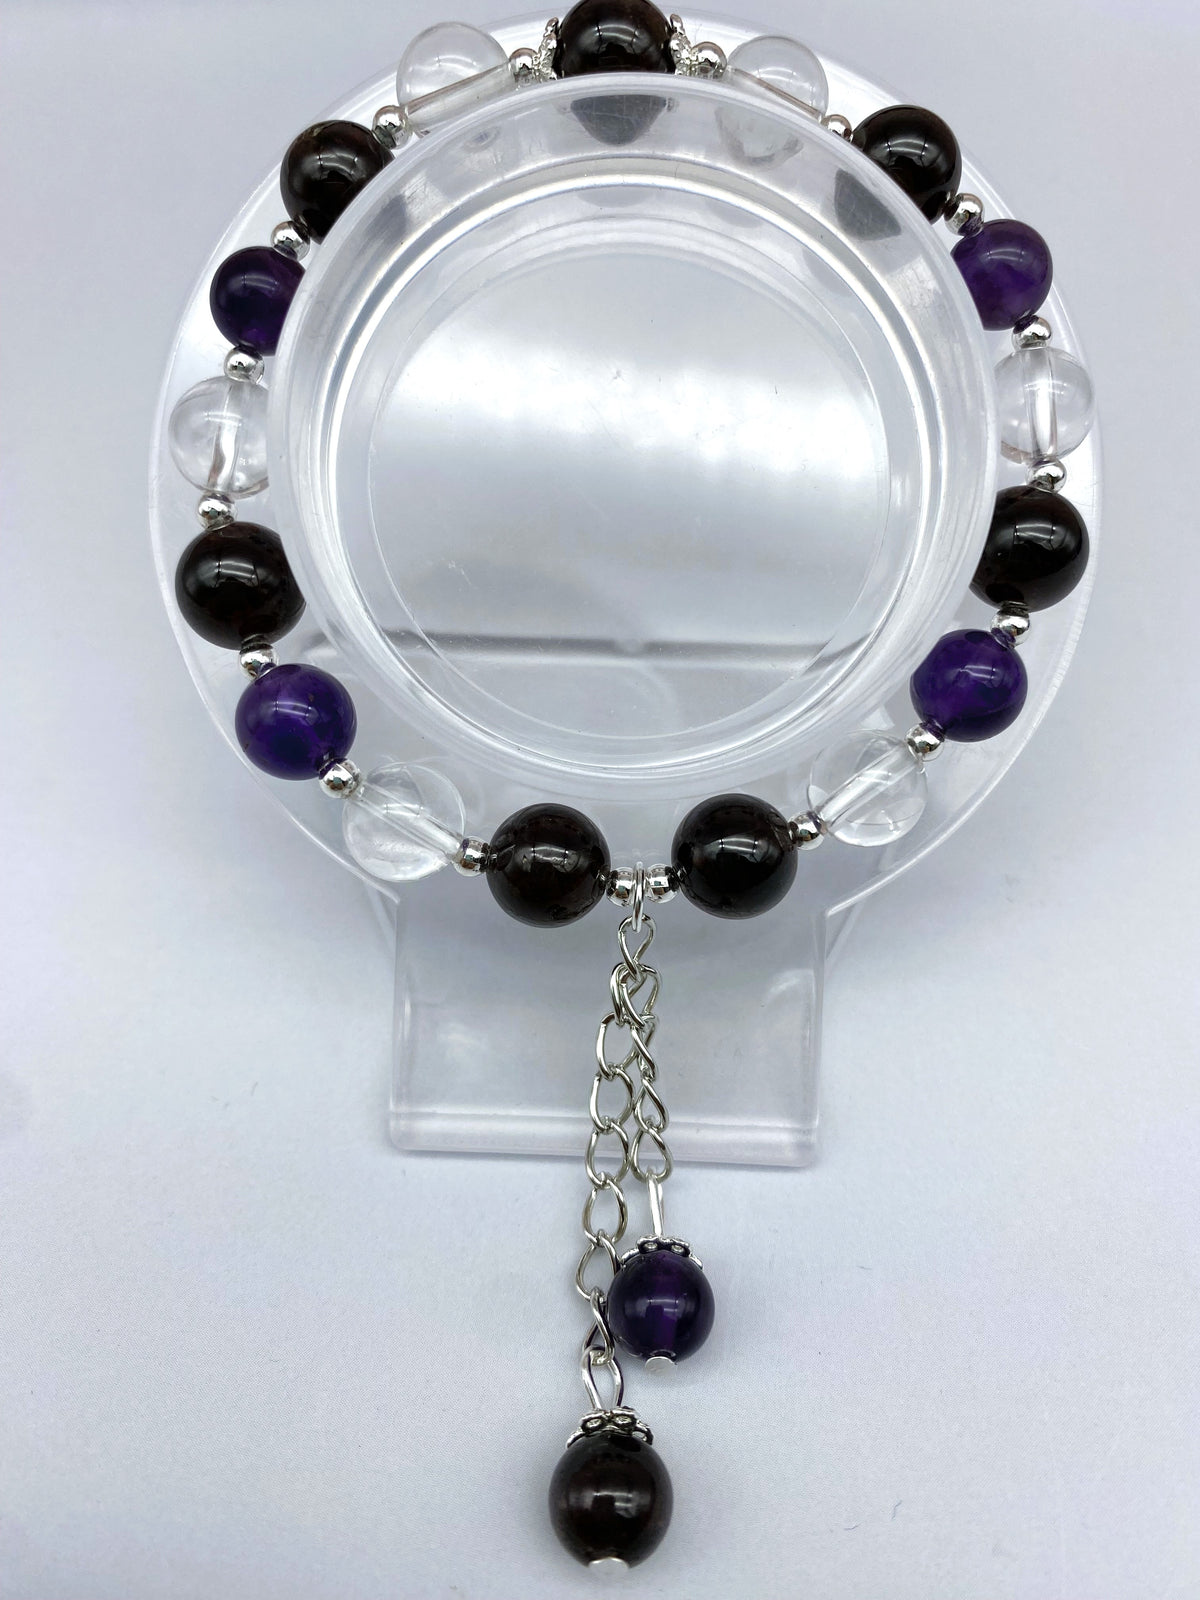 Stunning Design Amethyst Bracelet Collection 8mm Adjustable Natural Gemstone Bracelet Healing Crystal Energy Quartz Chakras